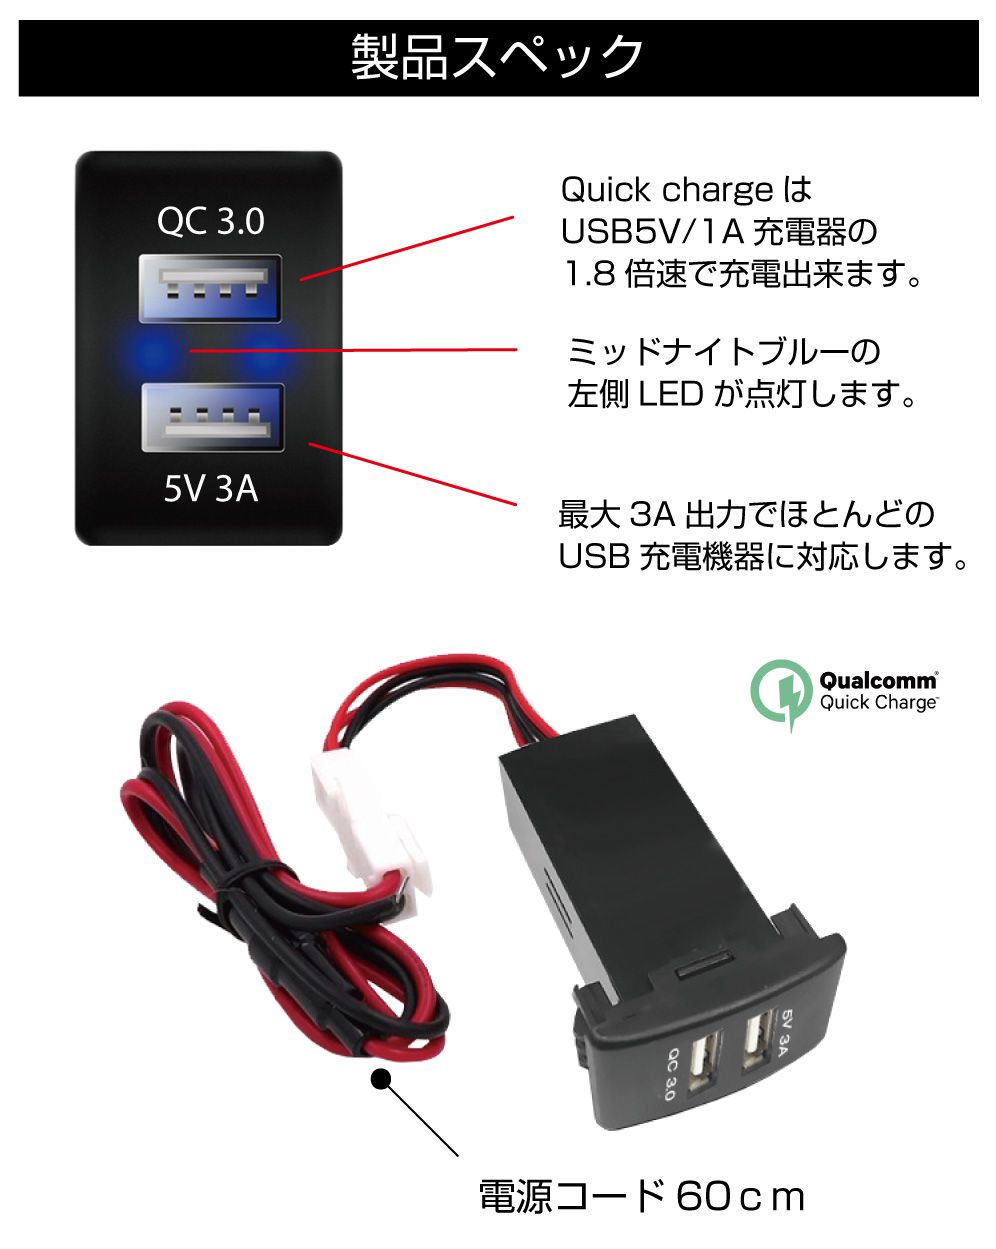 USB 充電 ポート USBポート 増設 車 usbポート 埋込 LED 2ポート 3A QC3.0 クイックチャージ3.0 接続 ジャック 増設電源 スズキ車系 S03タイプ スイッチホール増設用 QC3.0&5V3AUSBポート PO-S03-QU3 メール便(ネコポス)送料無料 3